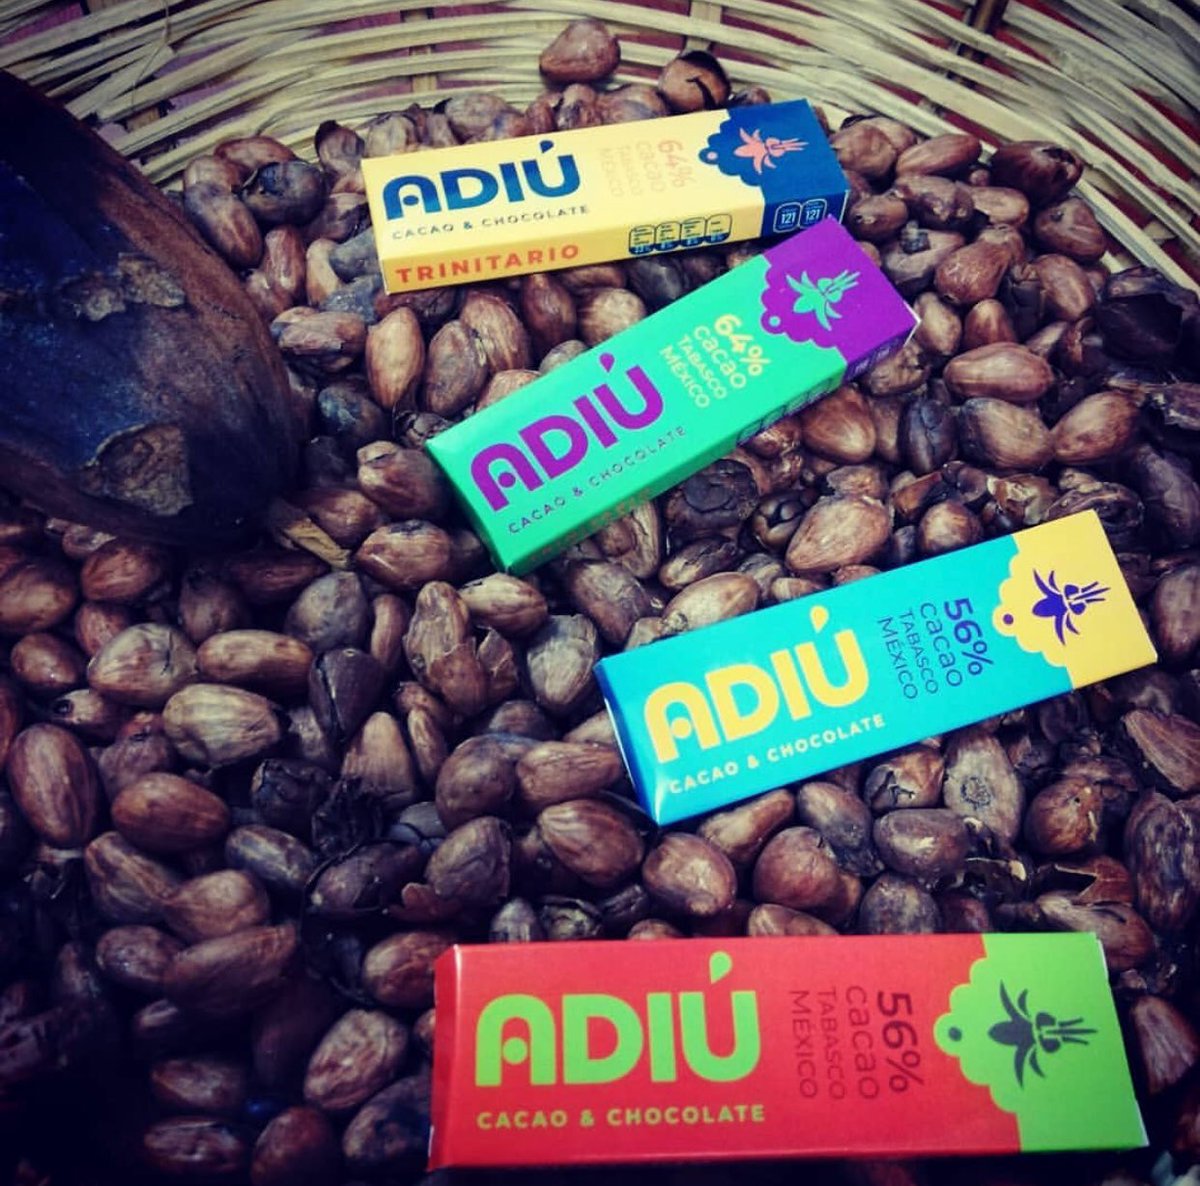 Qué creen!! Los mini #Adiú ya están a la venta en #Mérida has tu pedido aquí!! #chocolate #cacalove #chocolateméxicano #choquitosenyucatán